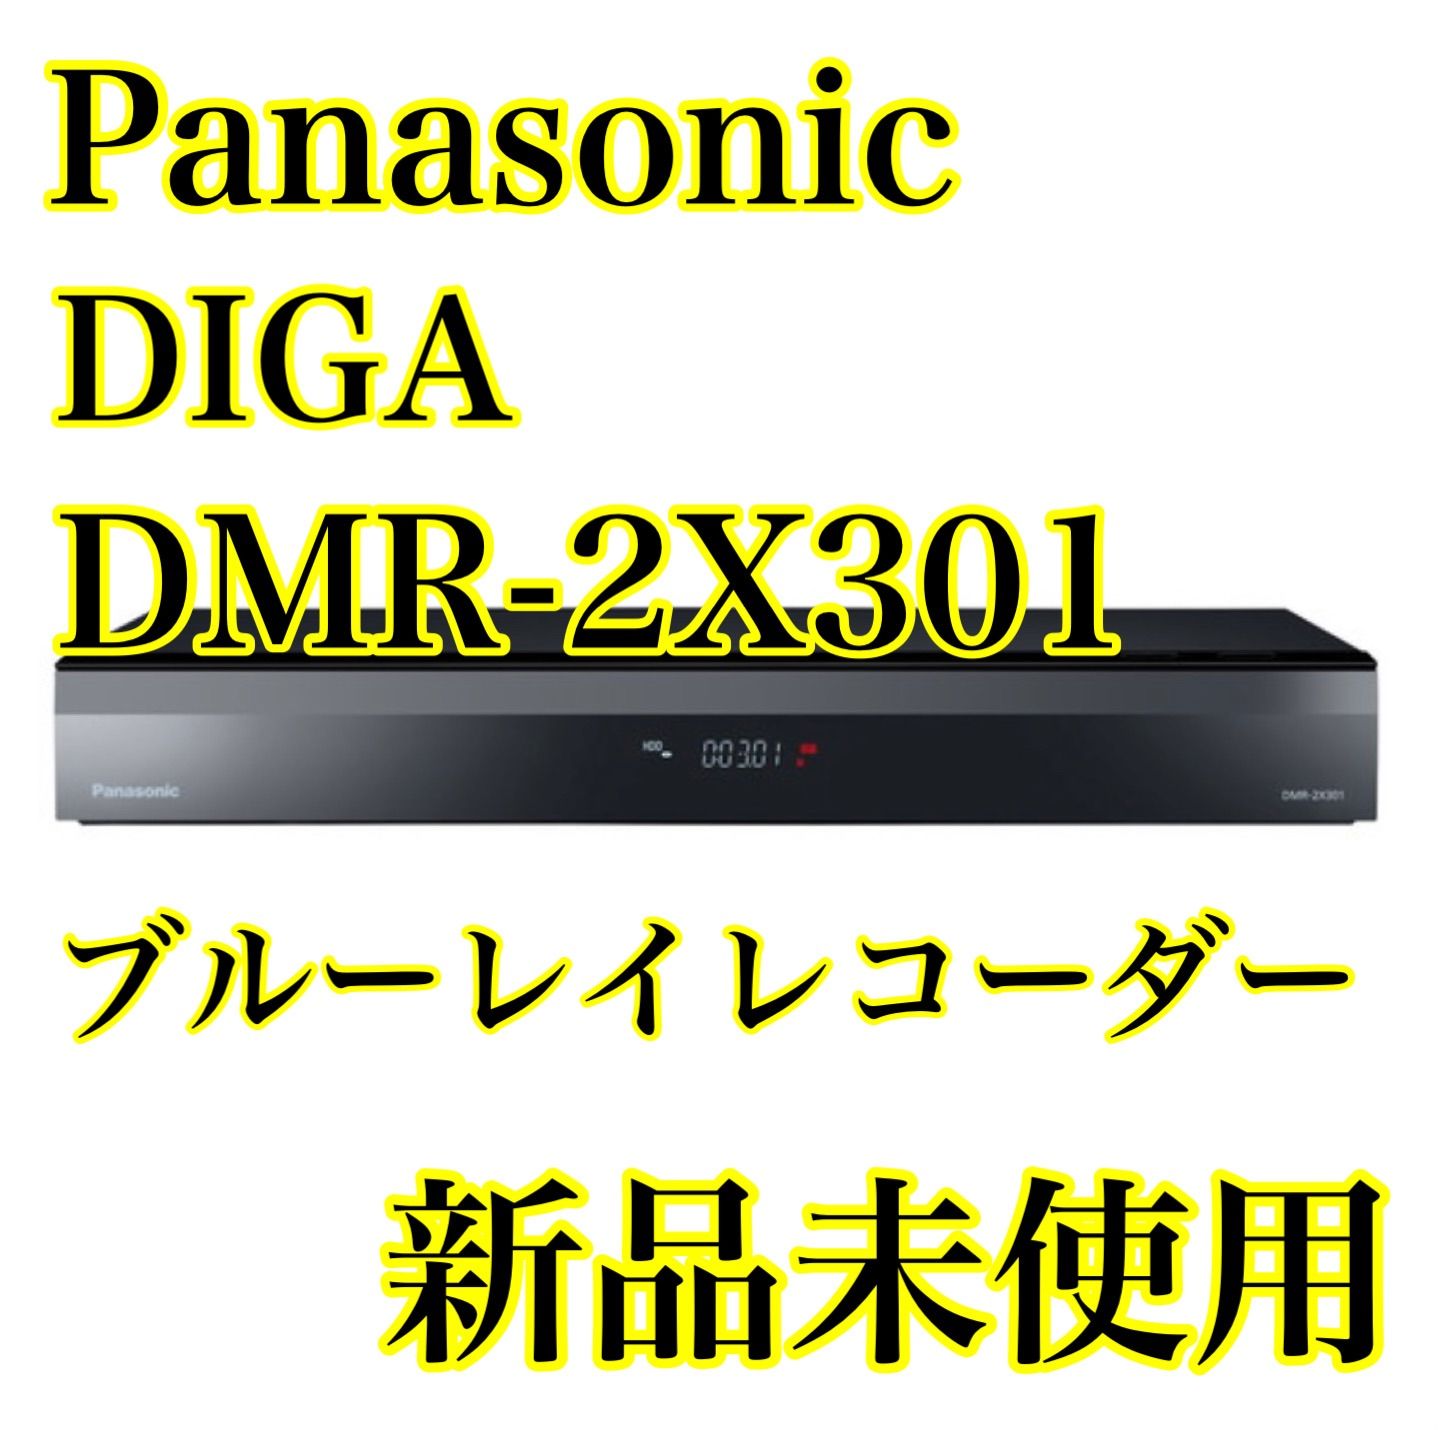 【新品未開封】DMR-2X301 パナソニック